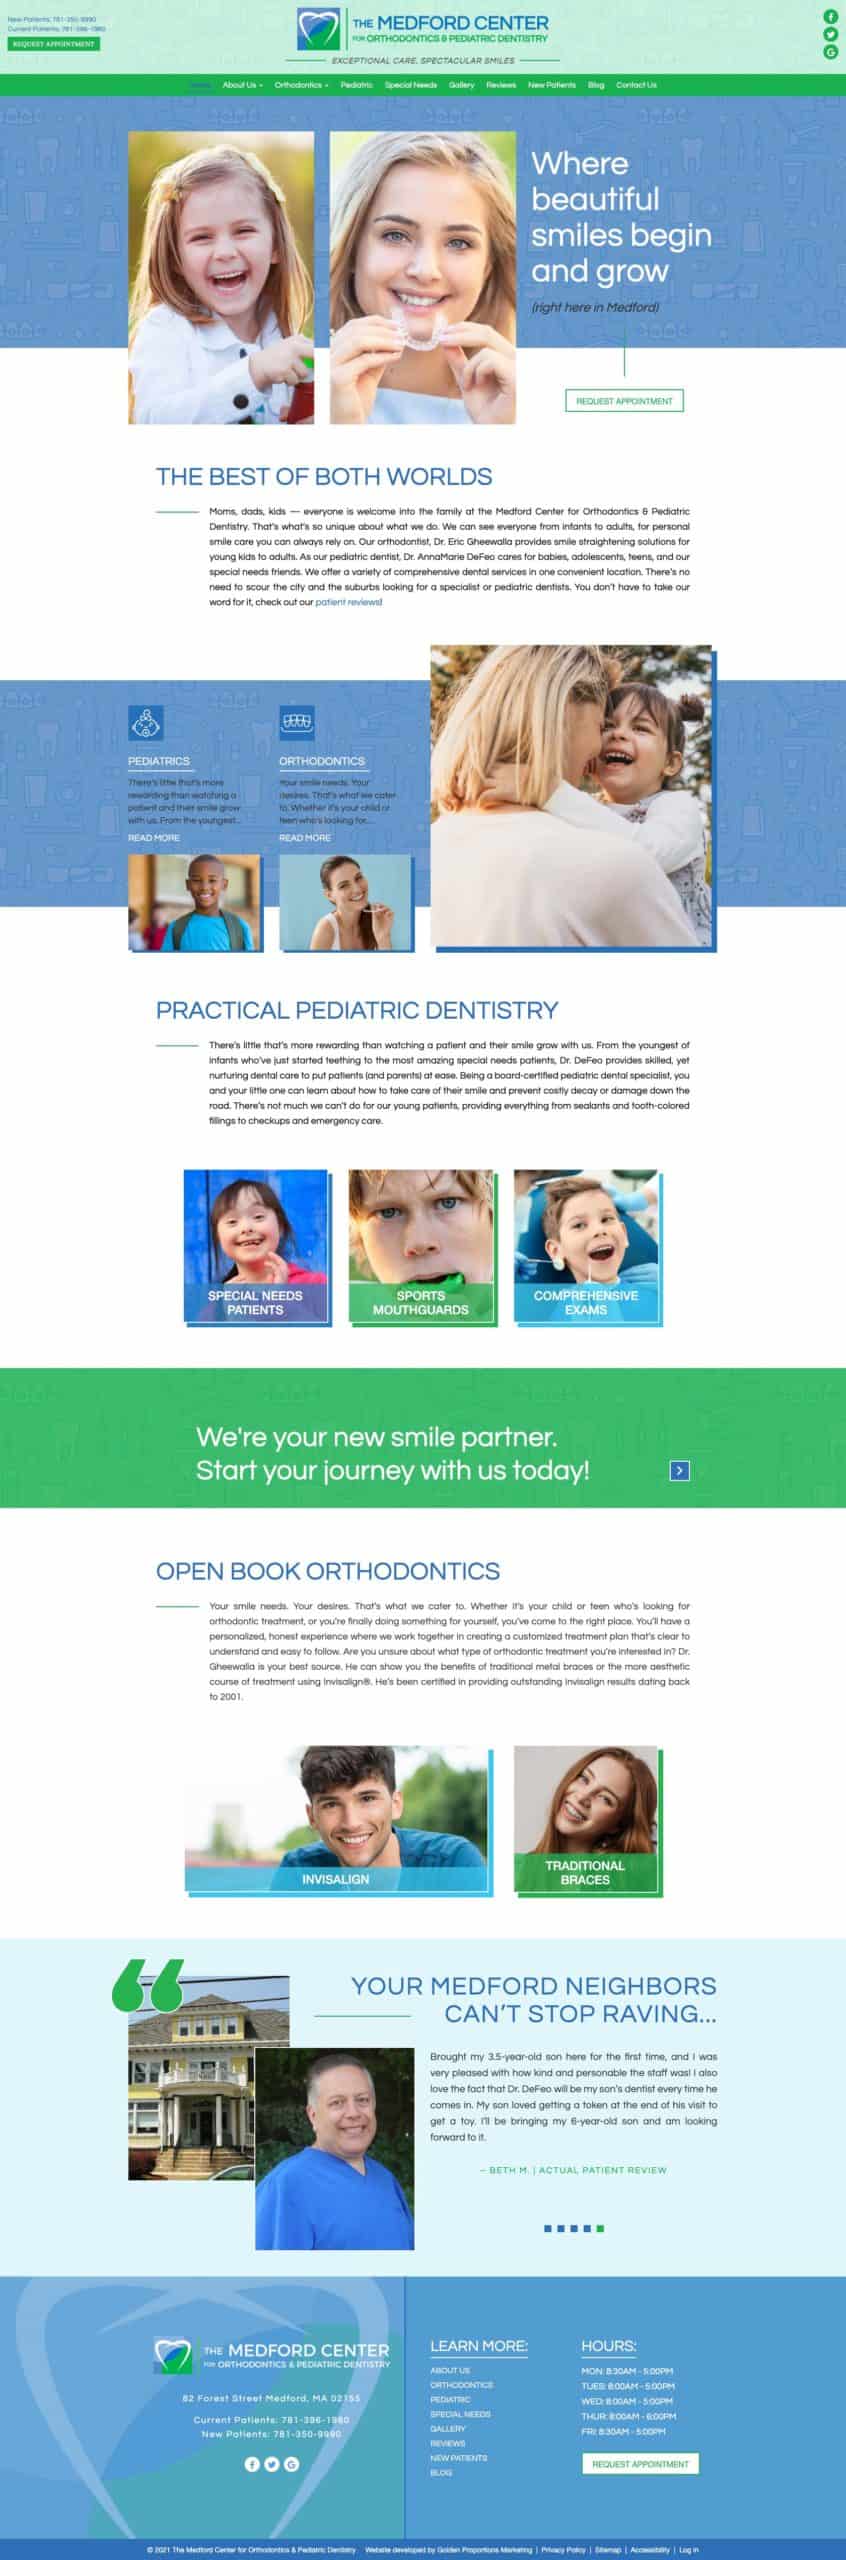 The Medford Center for Orthodontics & Pediatric Dentistry